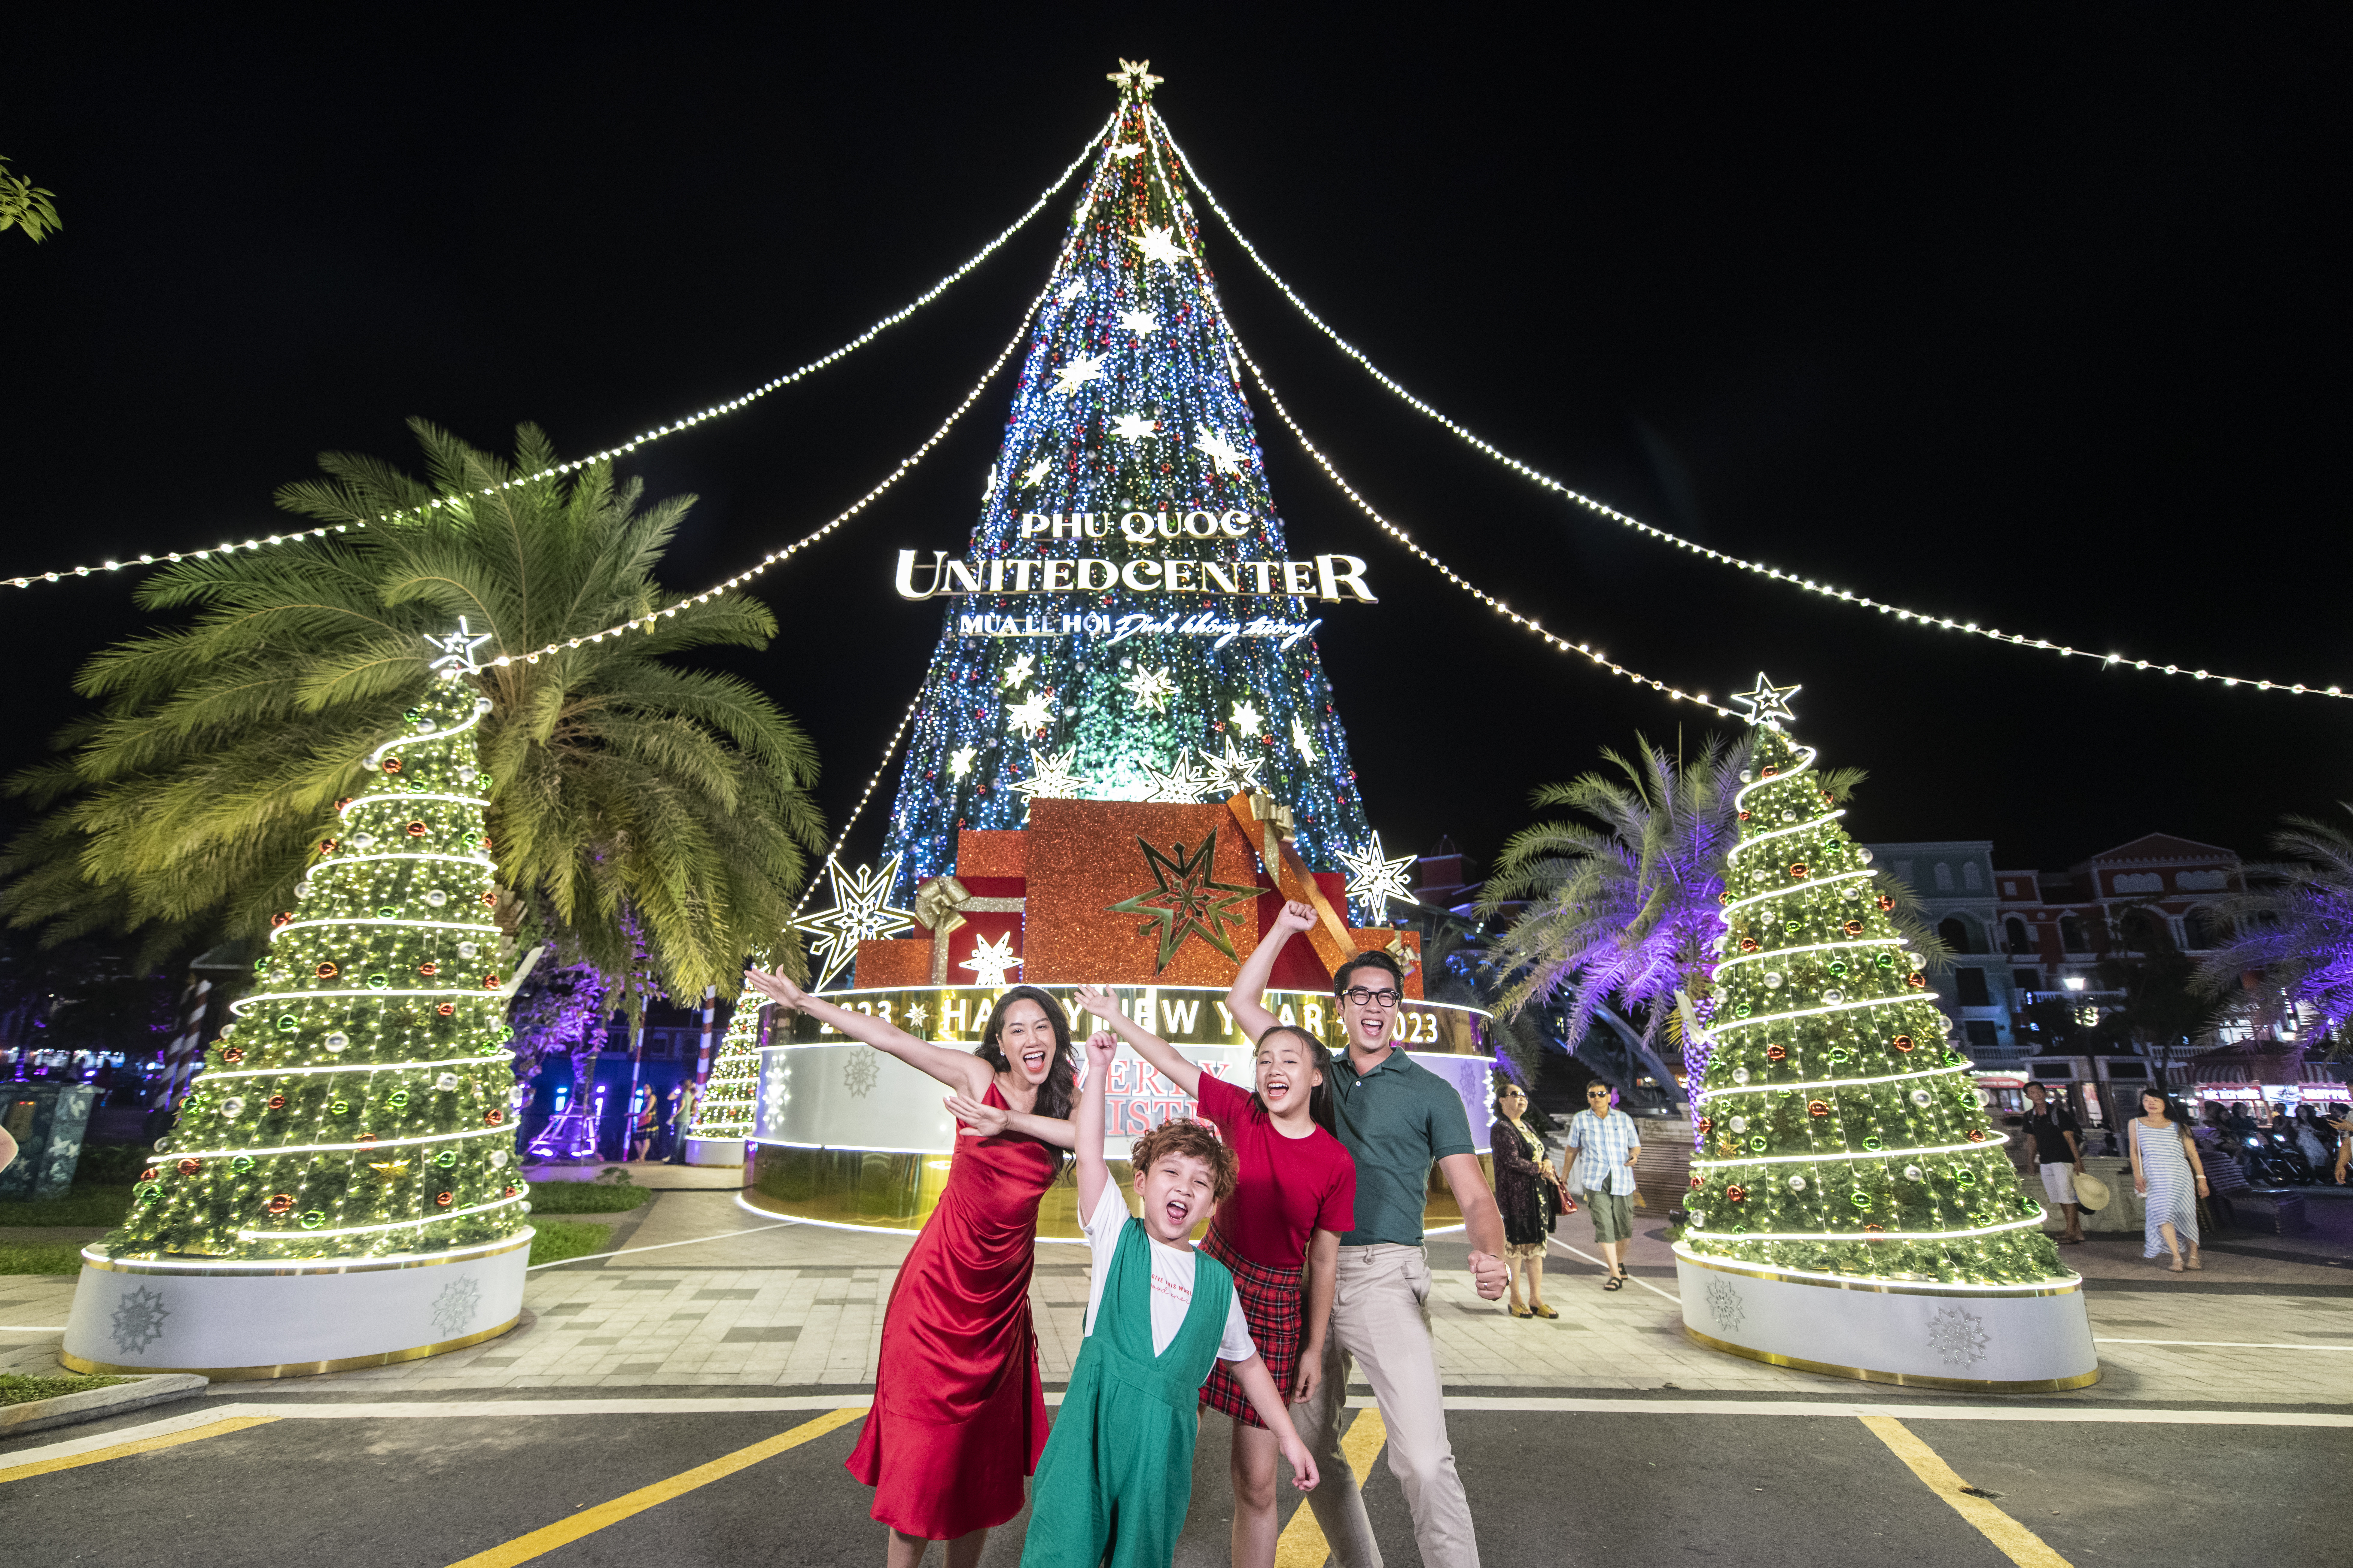 Tại Grand World, cây thông khổng lồ cao đến 23m với hệ thống đèn LED thông minh có khả năng “thay áo" liên tục 20 lần trong 5 phút trở thành điểm check-in hấp dẫn du khách gần xa.  - vin-2-549 - Giáng sinh rực rỡ sắc màu ở các quần thể Vinpearl